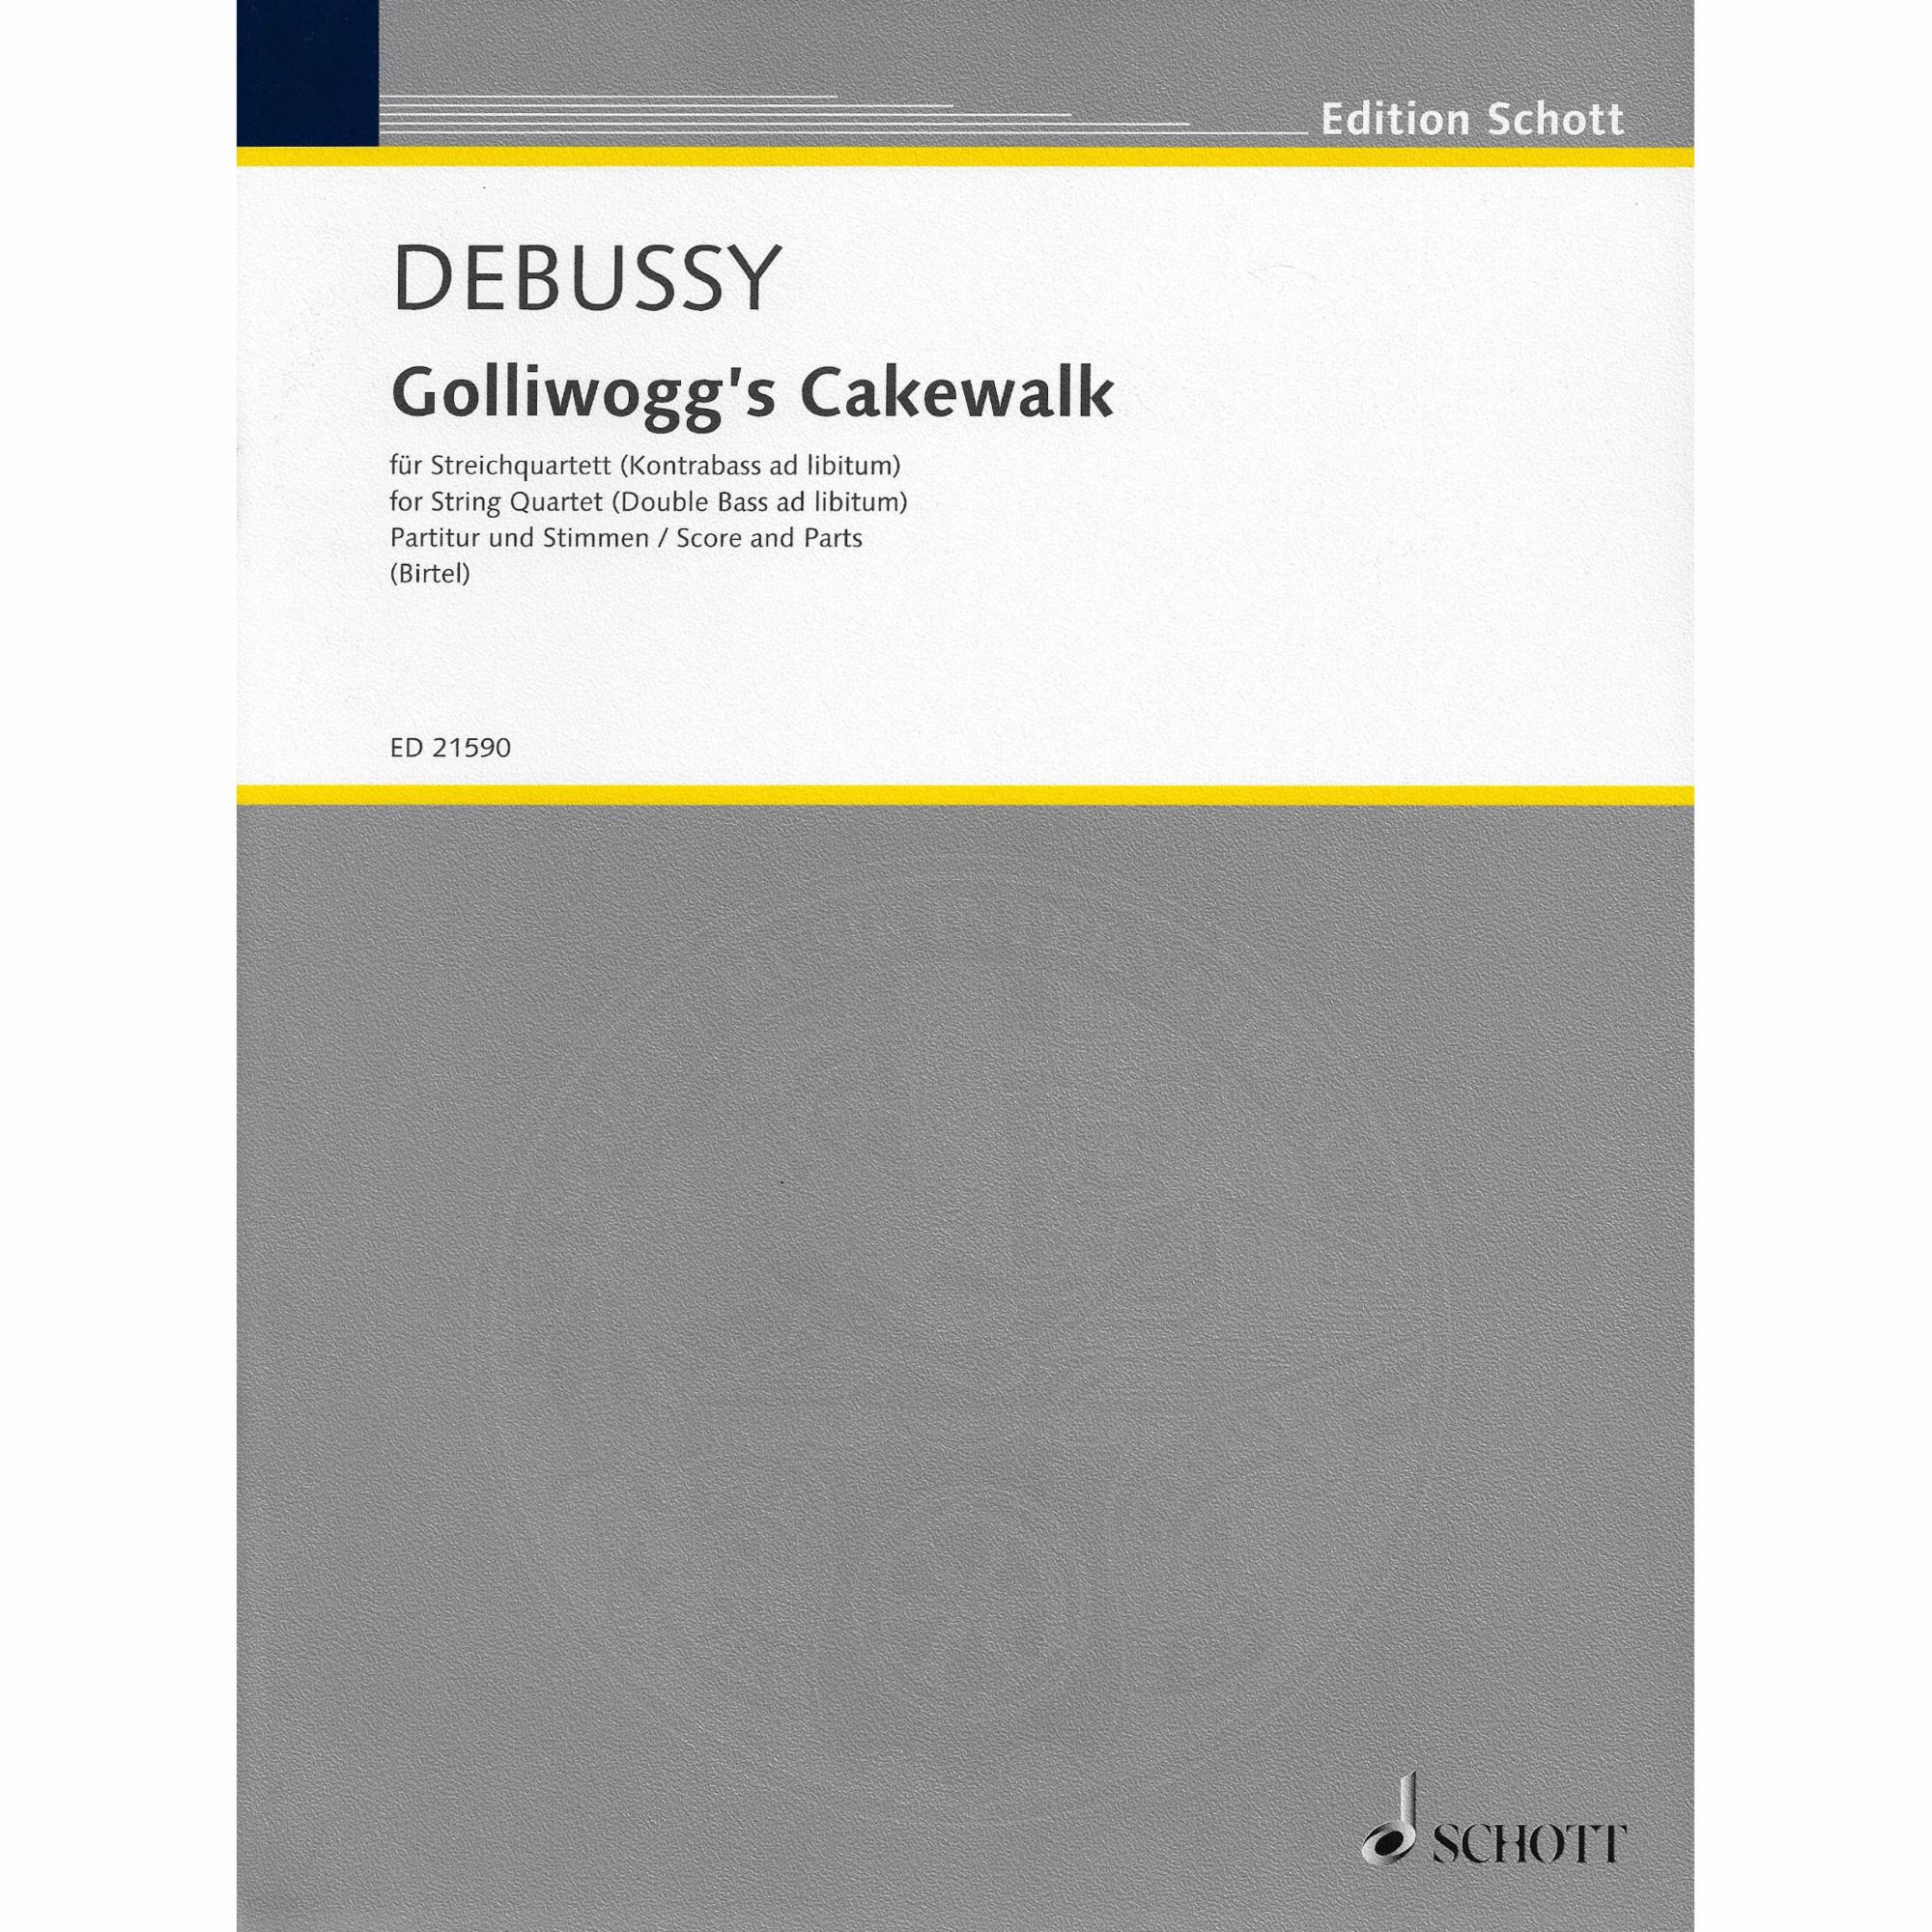 Debussy -- Golliwogg's Cakewalk for String Quartet